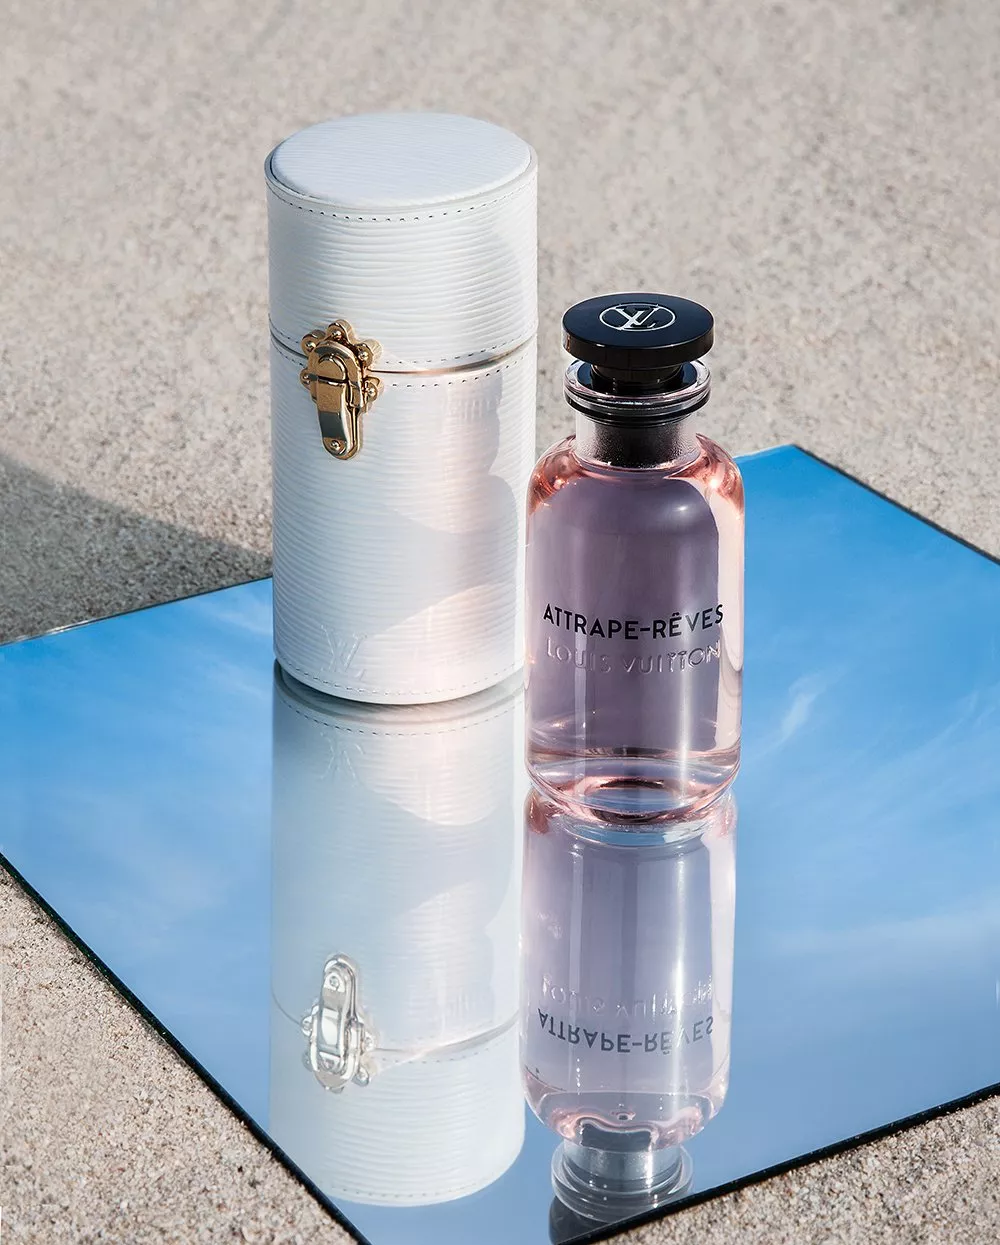 جلسة تصوير خاصة بمجموعة Les Parfums من Louis Vuitton